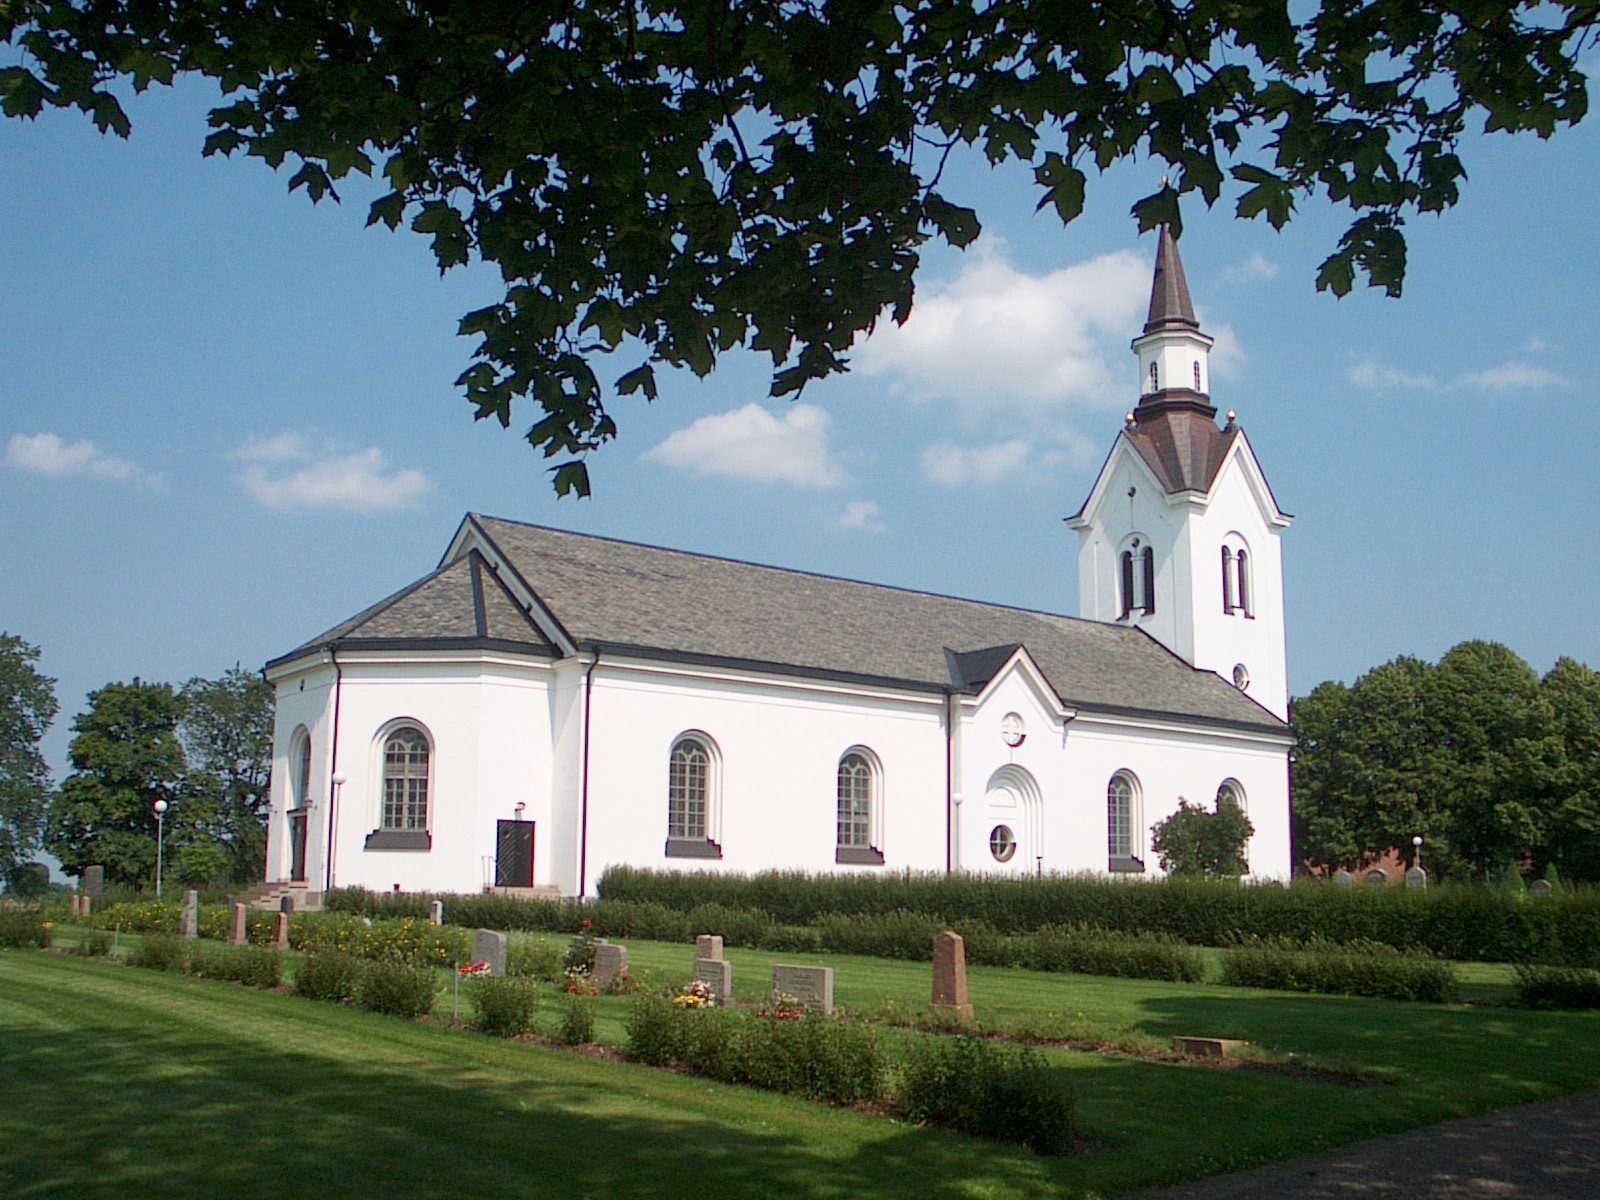 Högby kyrka med gravstenar i förgrunden.